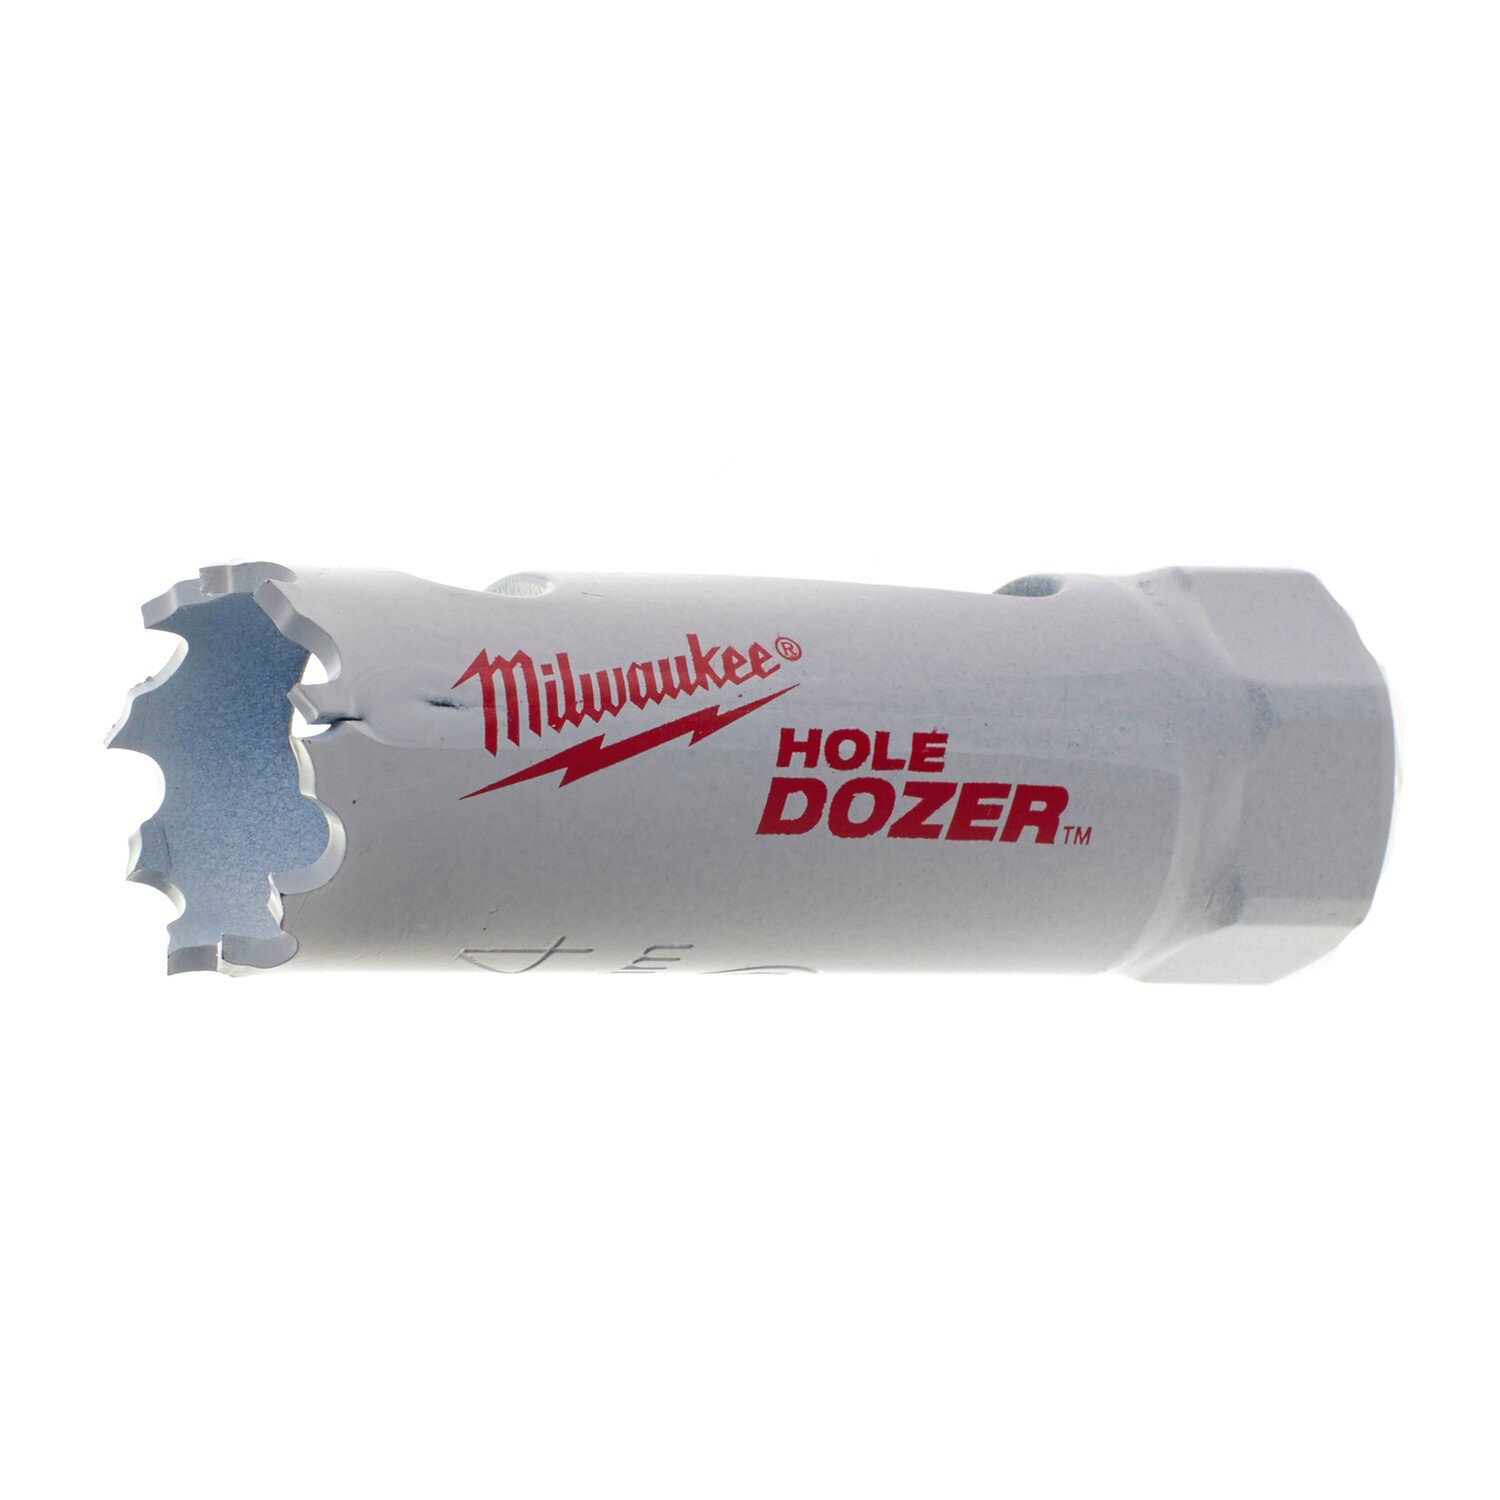 Биметаллическая коронка Hole Dozer Holesaw 19 мм (16шт) MILWAUKEE Hole Dozer Holesaw 19мм